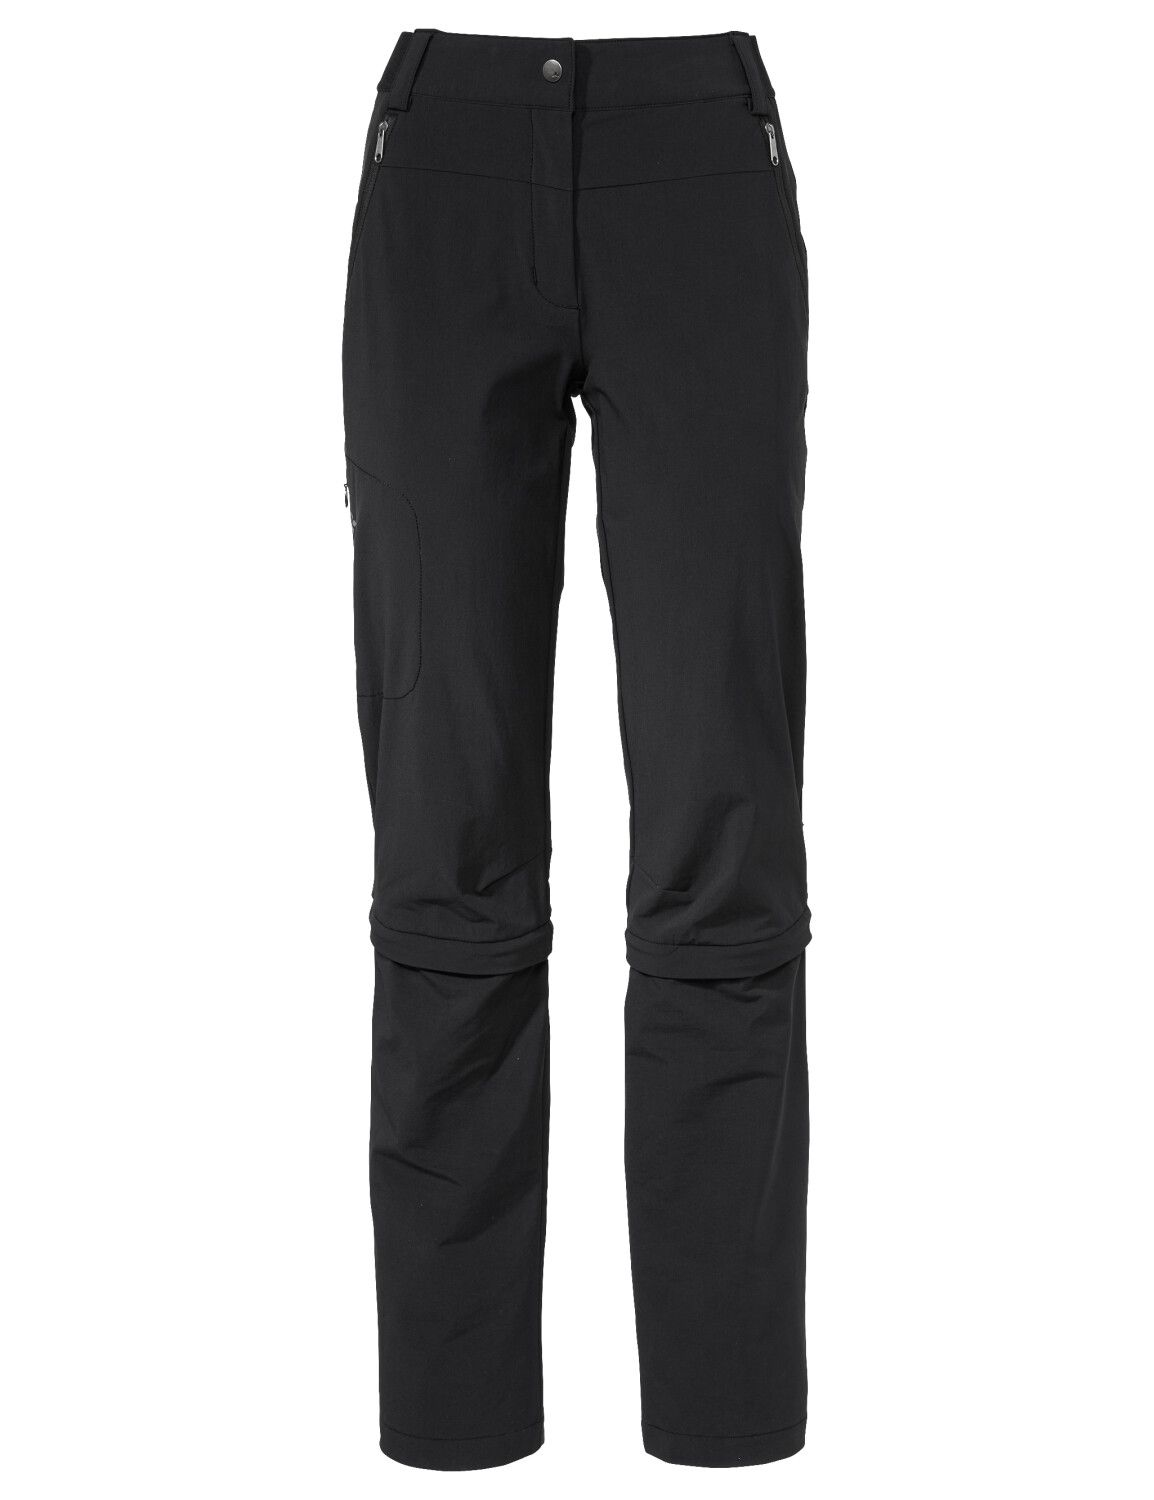 VAUDE Women's Farley Stretch Capri T-Zip Pants III (Bild 23)